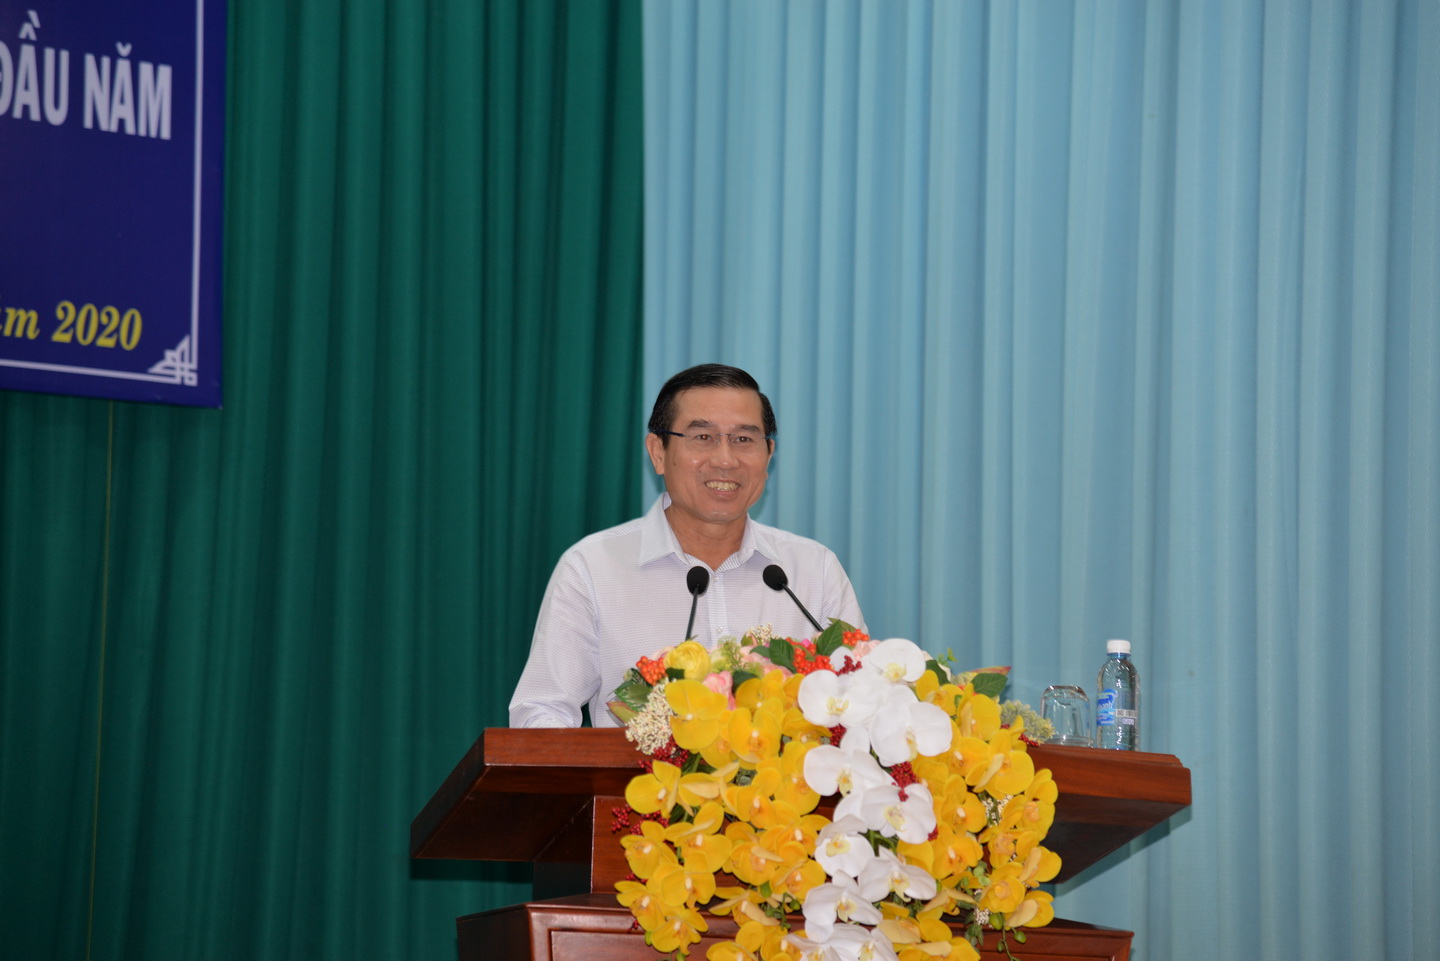 đồng chí Lê Văn Hưởng, Phó Bí thư Tỉnh ủy, Chủ tịch UBND tỉnh báo cáo tình hình phát triển kinh tế - xã hội tỉnh trong 6 tháng đầu năm 2020